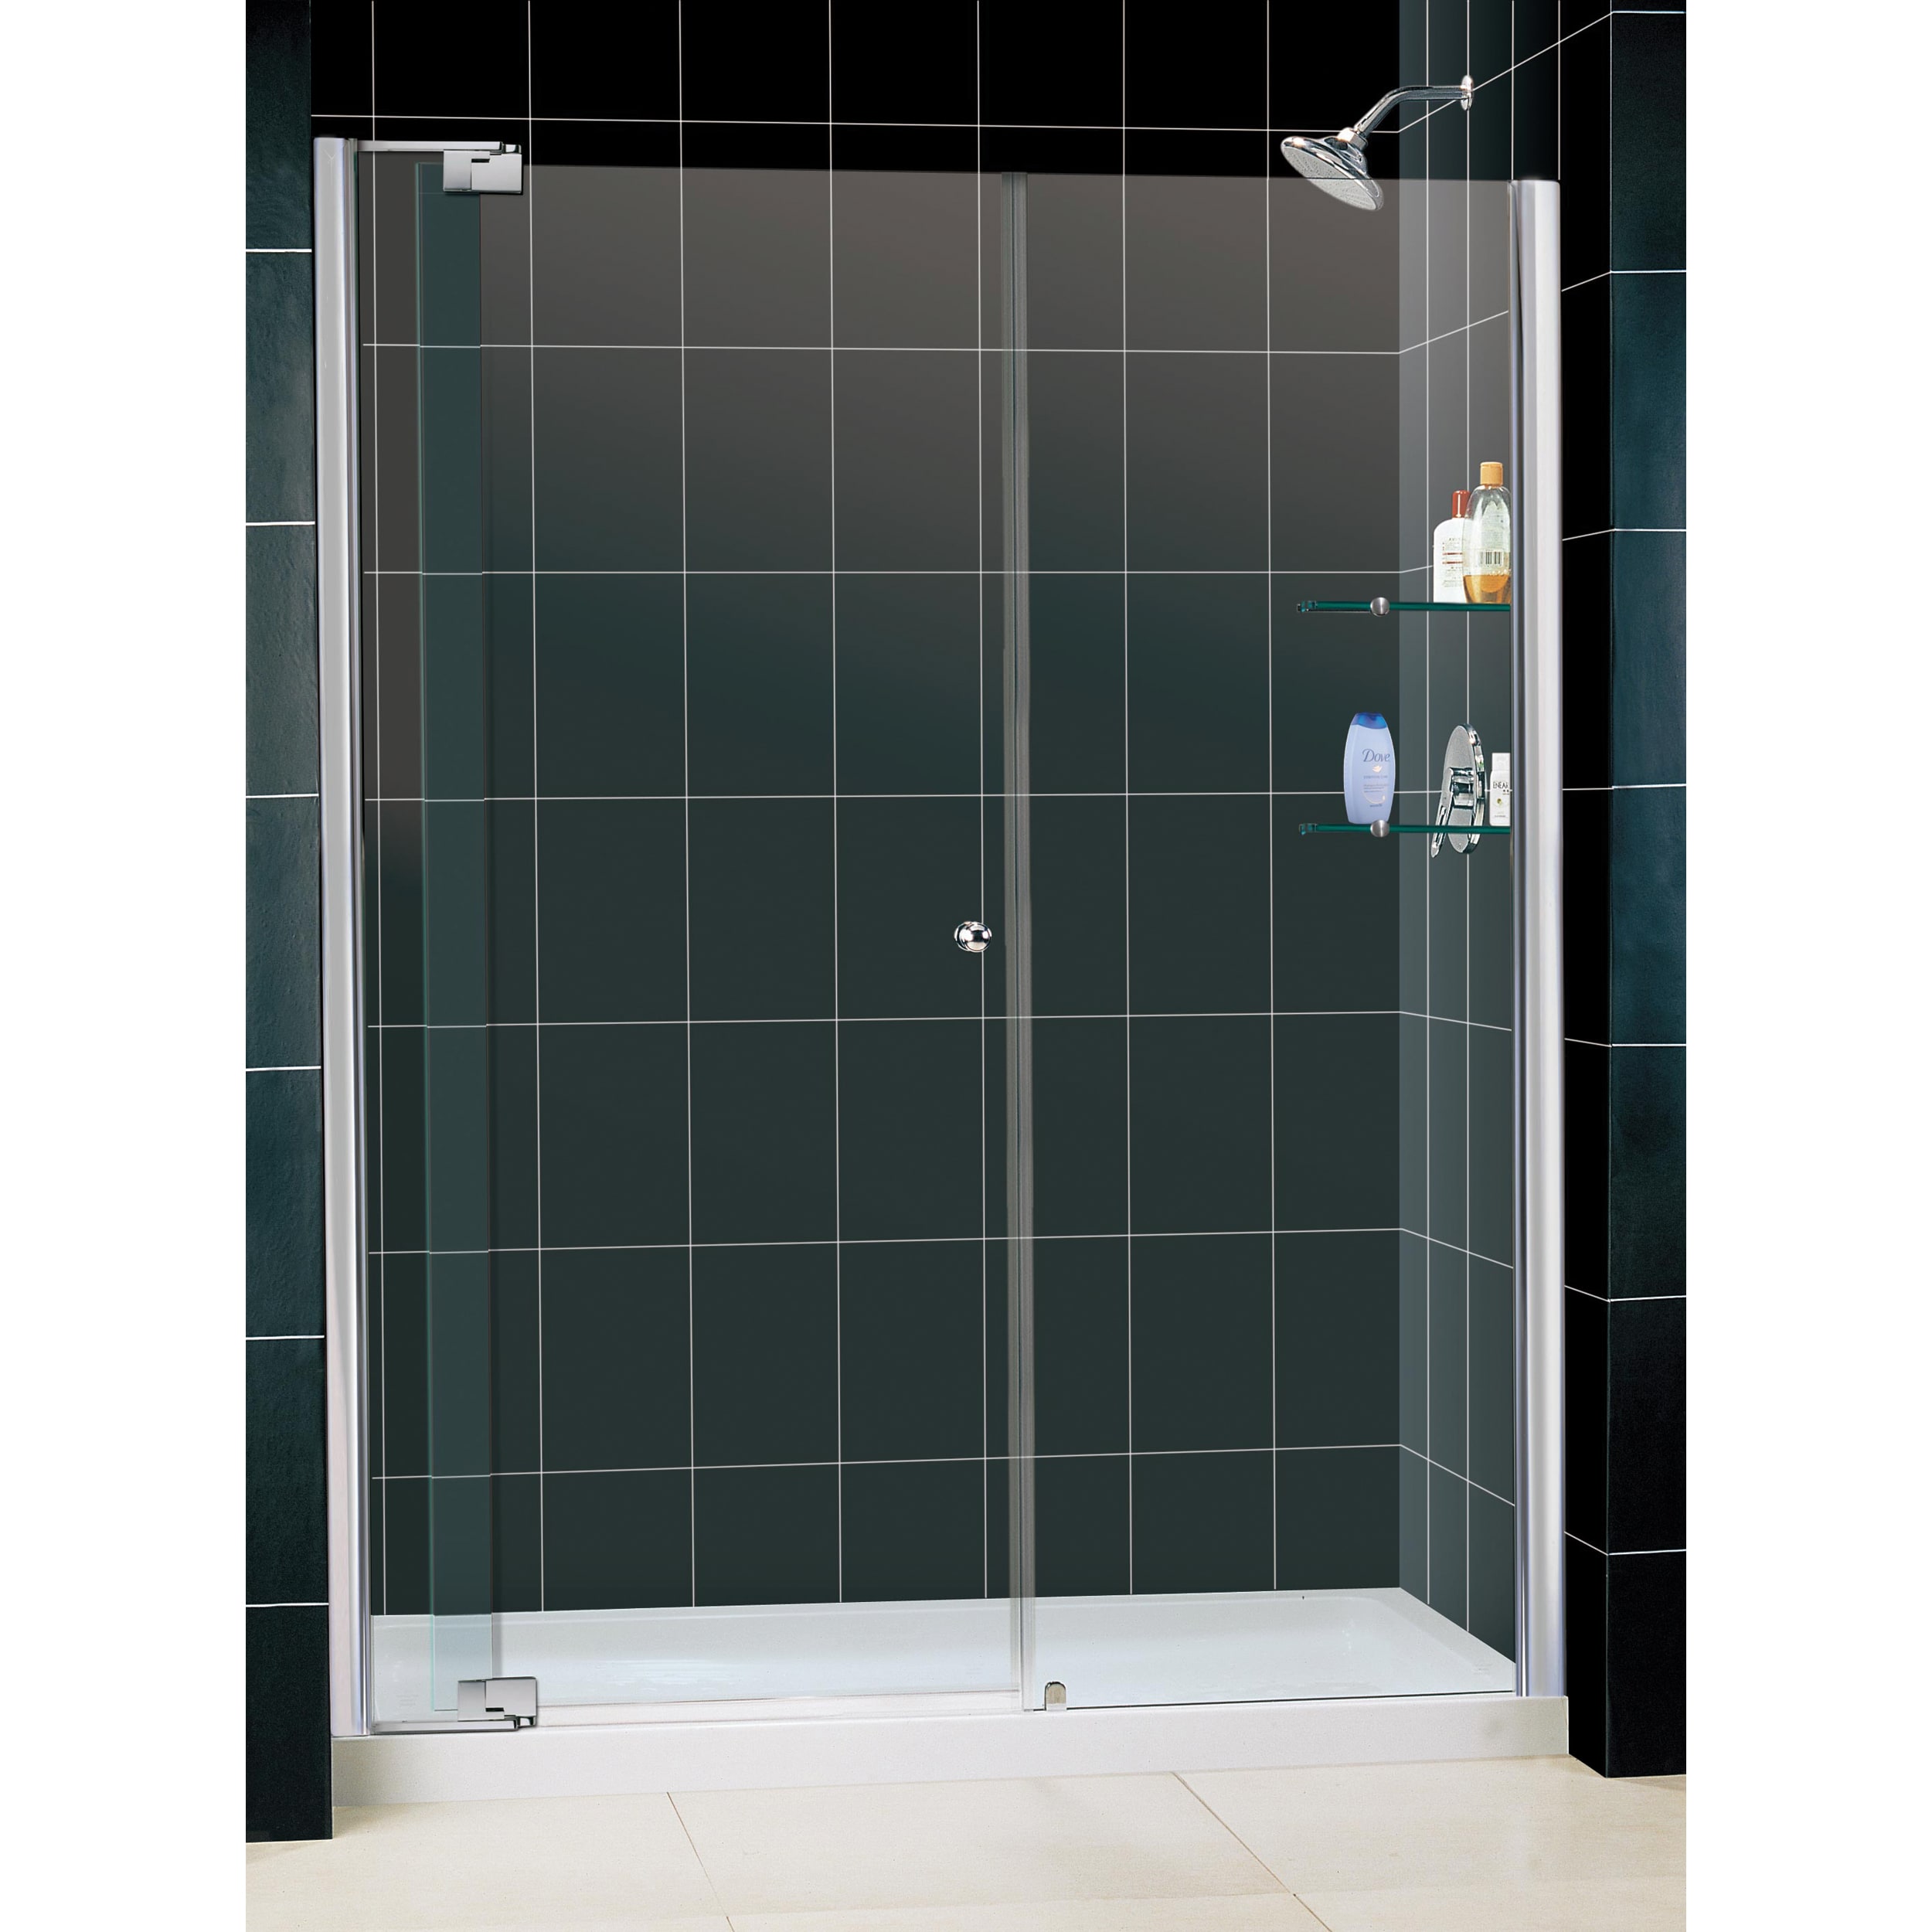 Dreamline Allure Frameless Pivot Shower Door And 30x60 inch Base